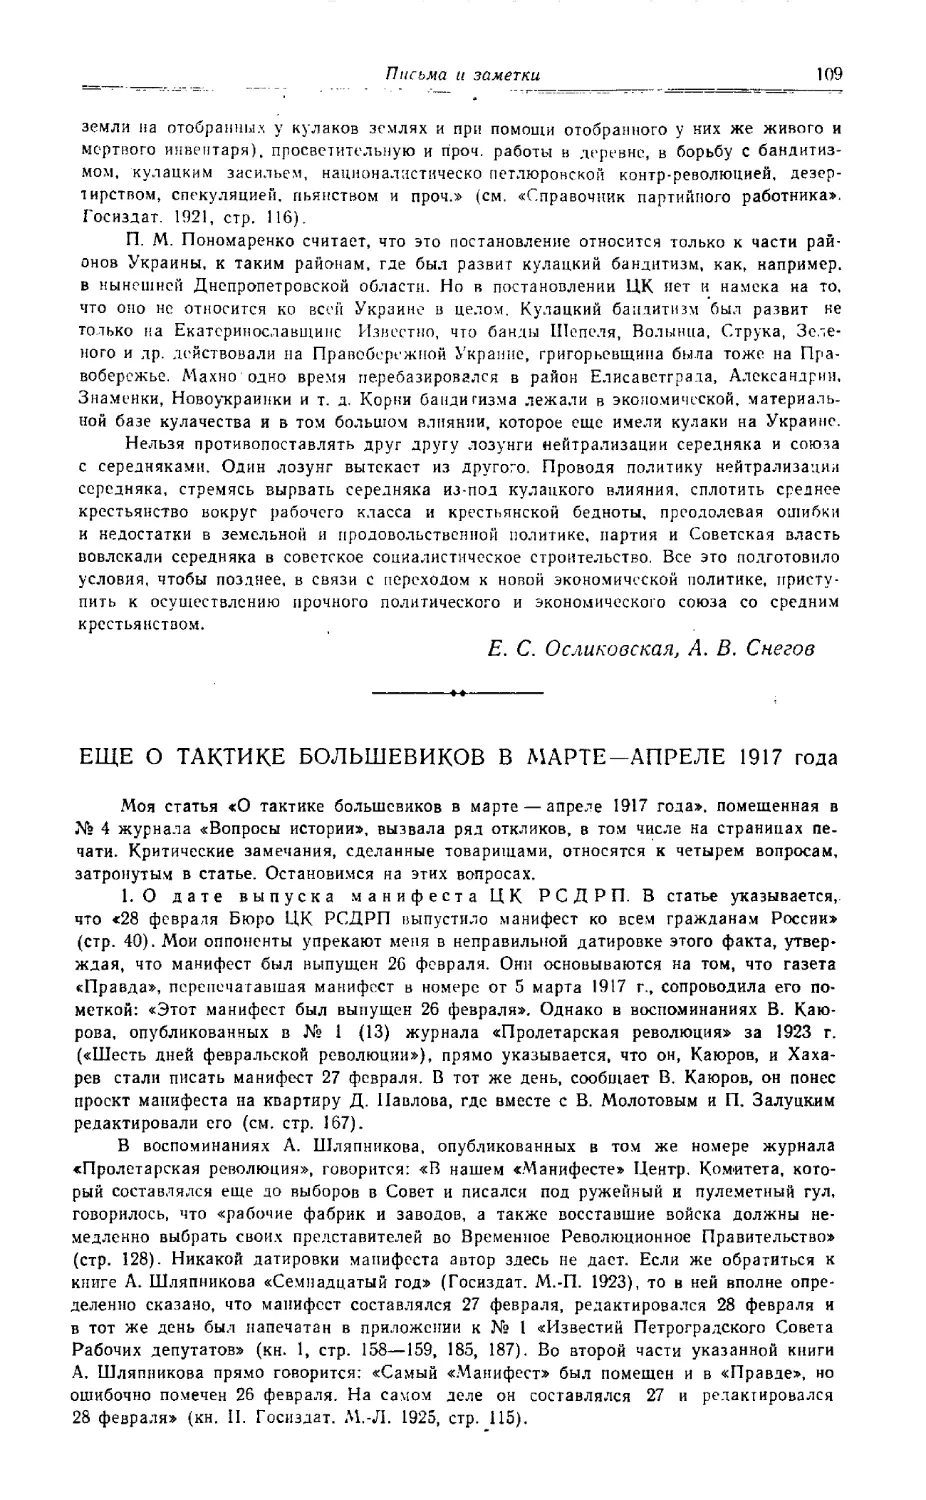 Э. Н. Бурджалов - Еще о тактике большевиков в марте - апреле 1917 года